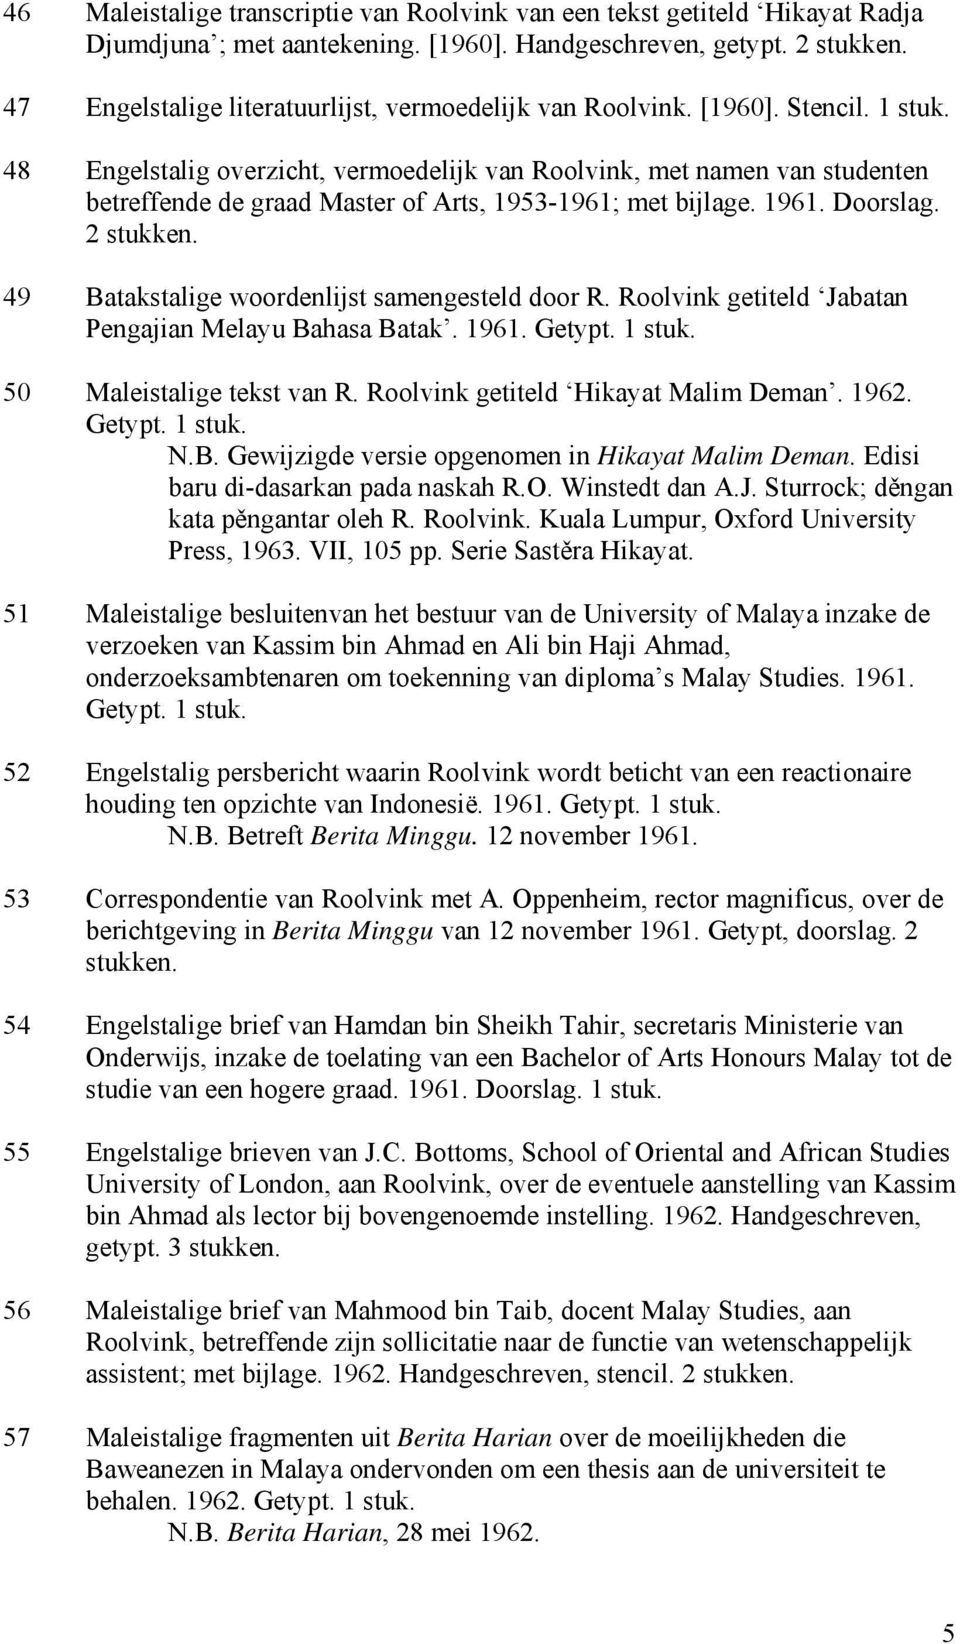 48 Engelstalig overzicht, vermoedelijk van Roolvink, met namen van studenten betreffende de graad Master of Arts, 1953-1961; met bijlage. 1961. Doorslag.